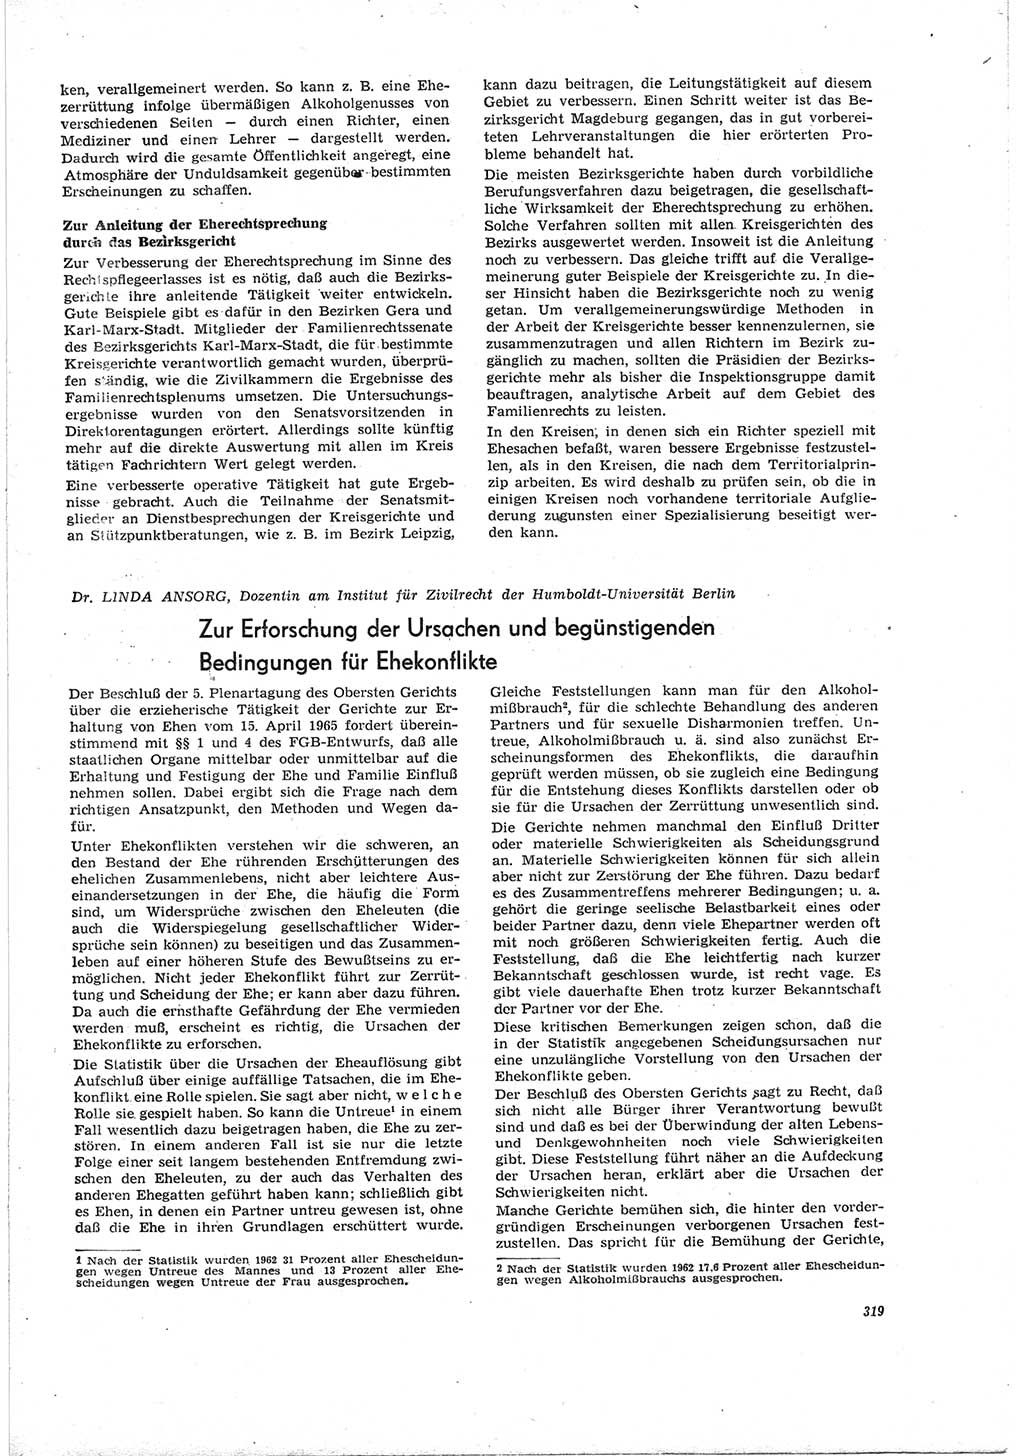 Neue Justiz (NJ), Zeitschrift für Recht und Rechtswissenschaft [Deutsche Demokratische Republik (DDR)], 19. Jahrgang 1965, Seite 319 (NJ DDR 1965, S. 319)